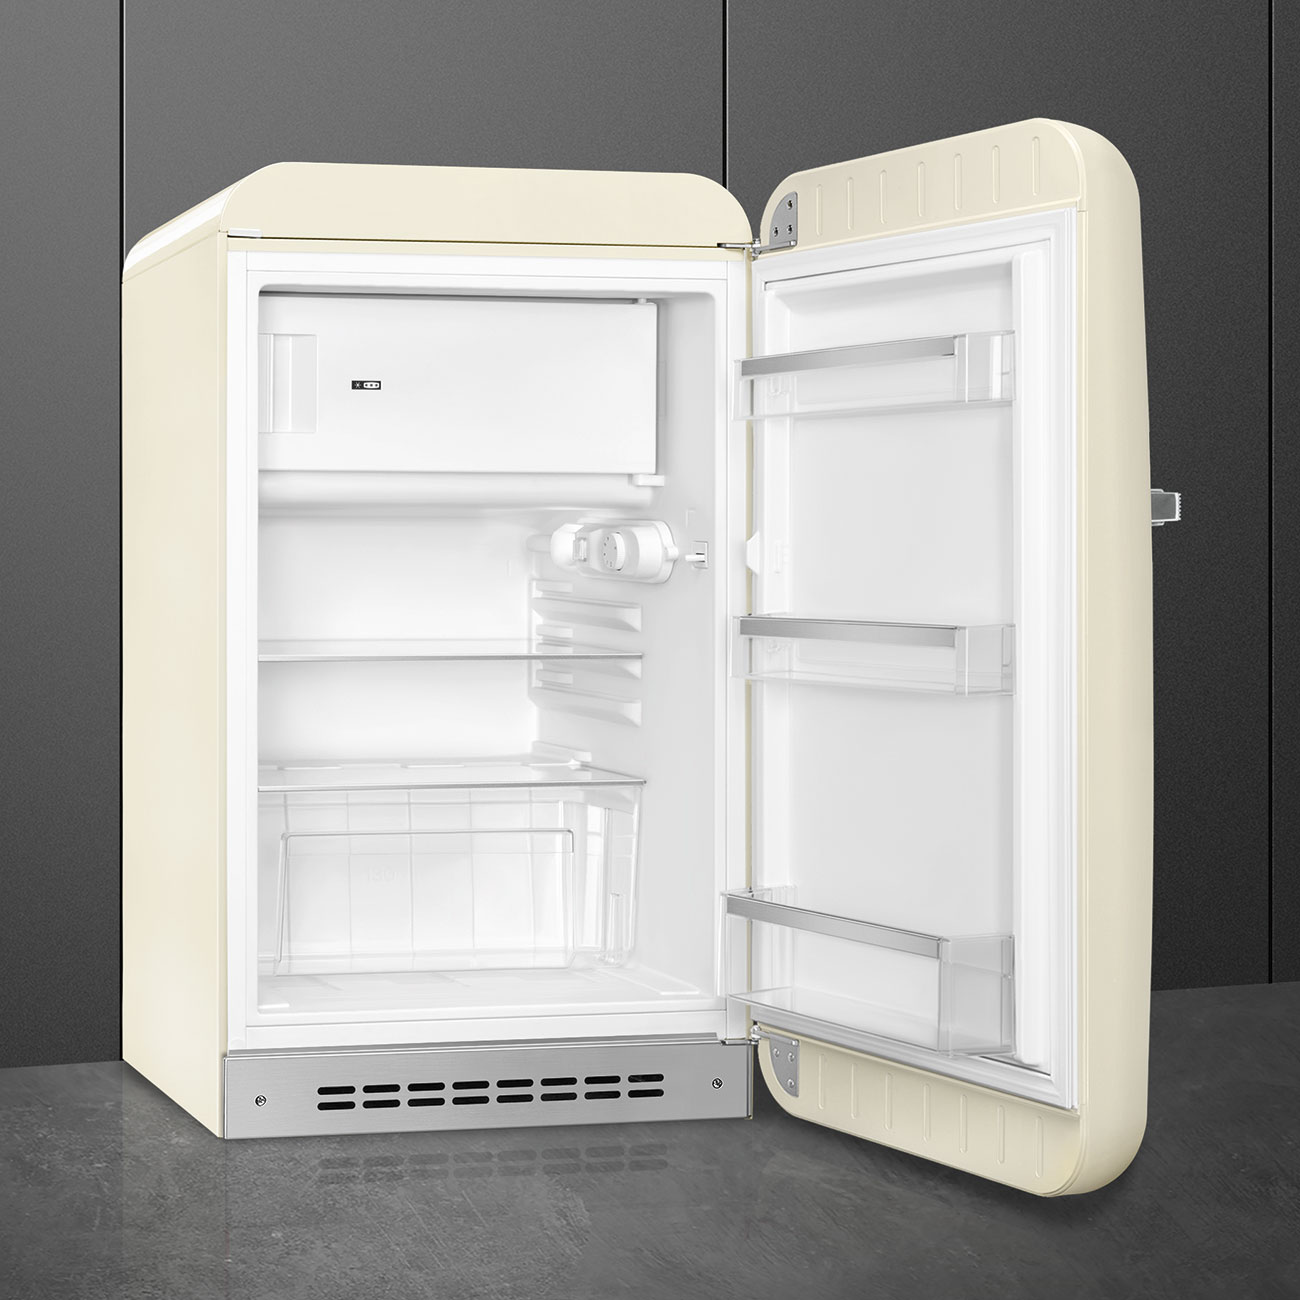 Cream refrigerator - Smeg_5